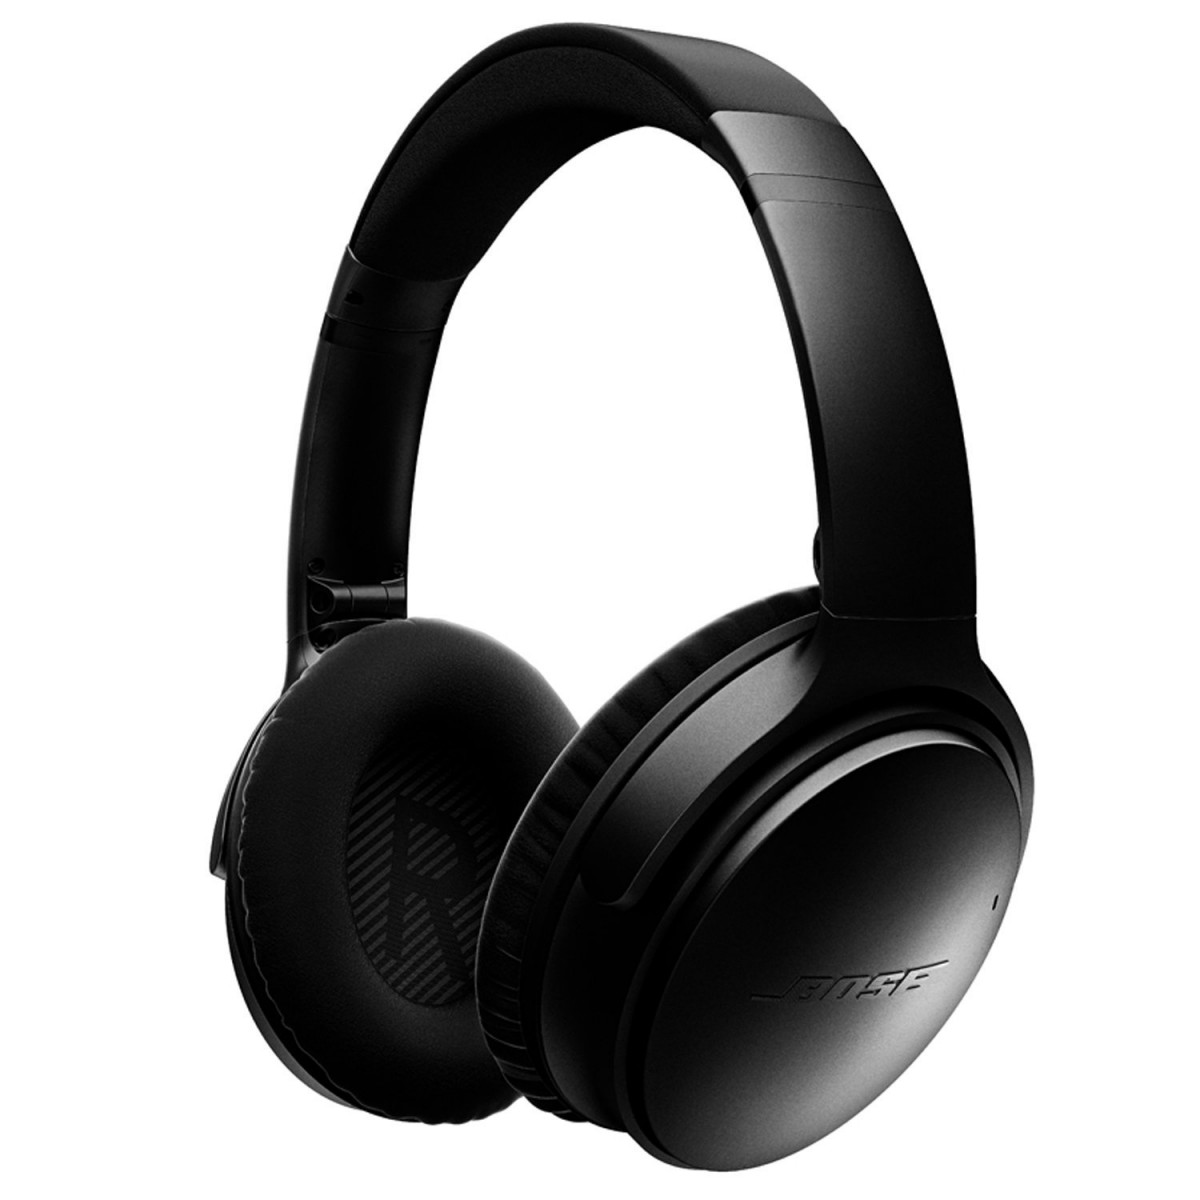 bose quietcomfort 35 ii wireless headphone review